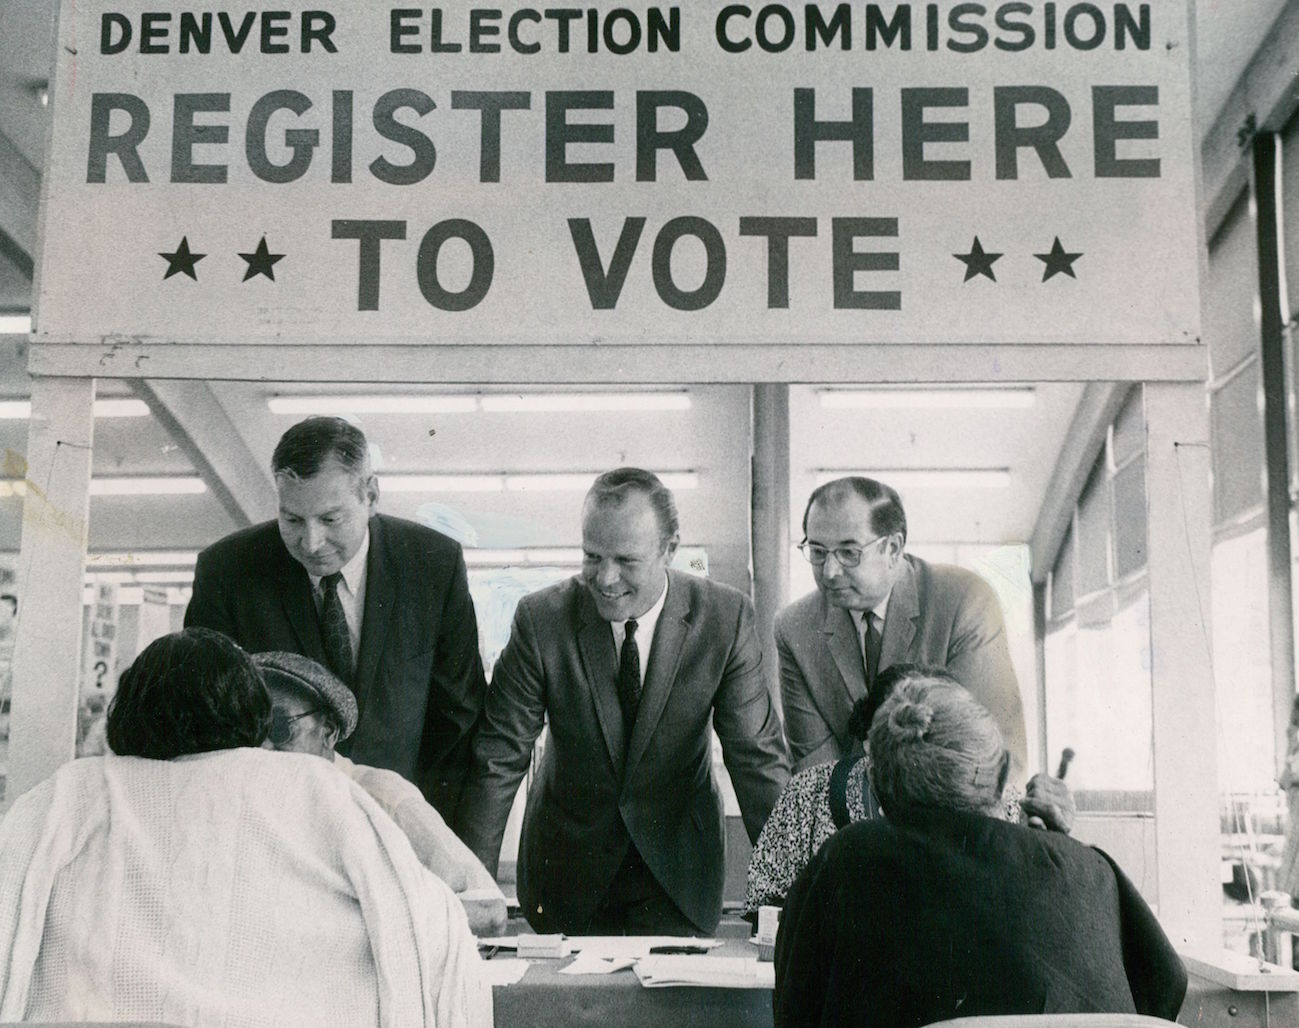 Denver election commissioners on hand for voter registration in Denver on July 9, 1968 (Bill Johnson—Denver Post / Getty Images)